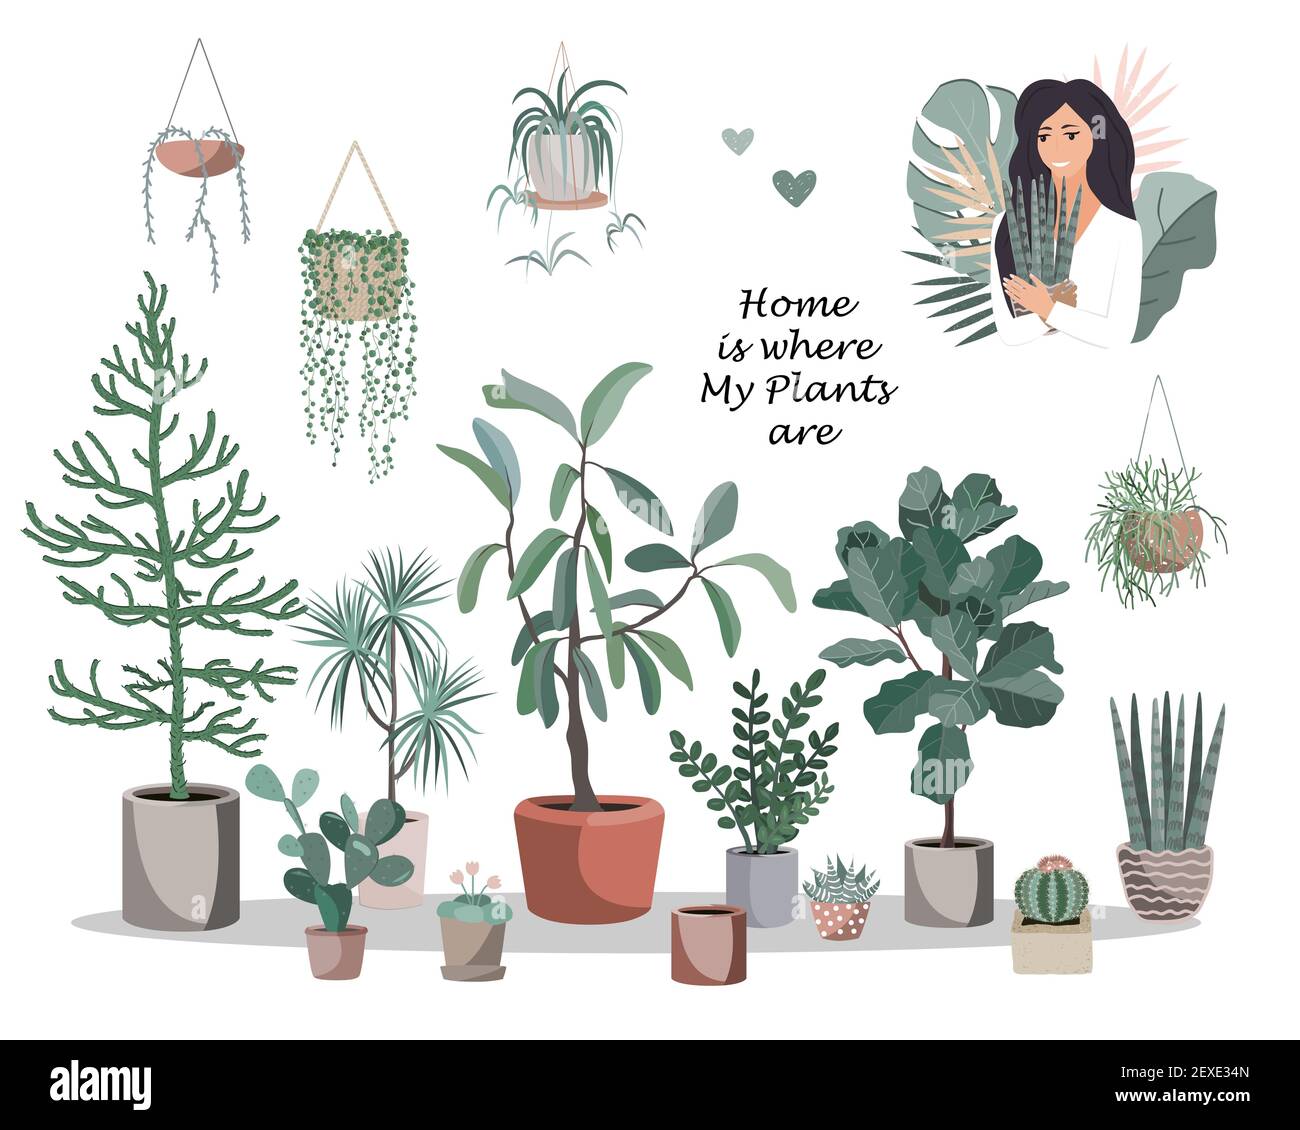 La casa è dove le mie piante sono poster. Carino casa piante pentole e cestini, cactus e succulenti, e bella ragazza con vaso fiore. Vettore di stile piatto Illustrazione Vettoriale